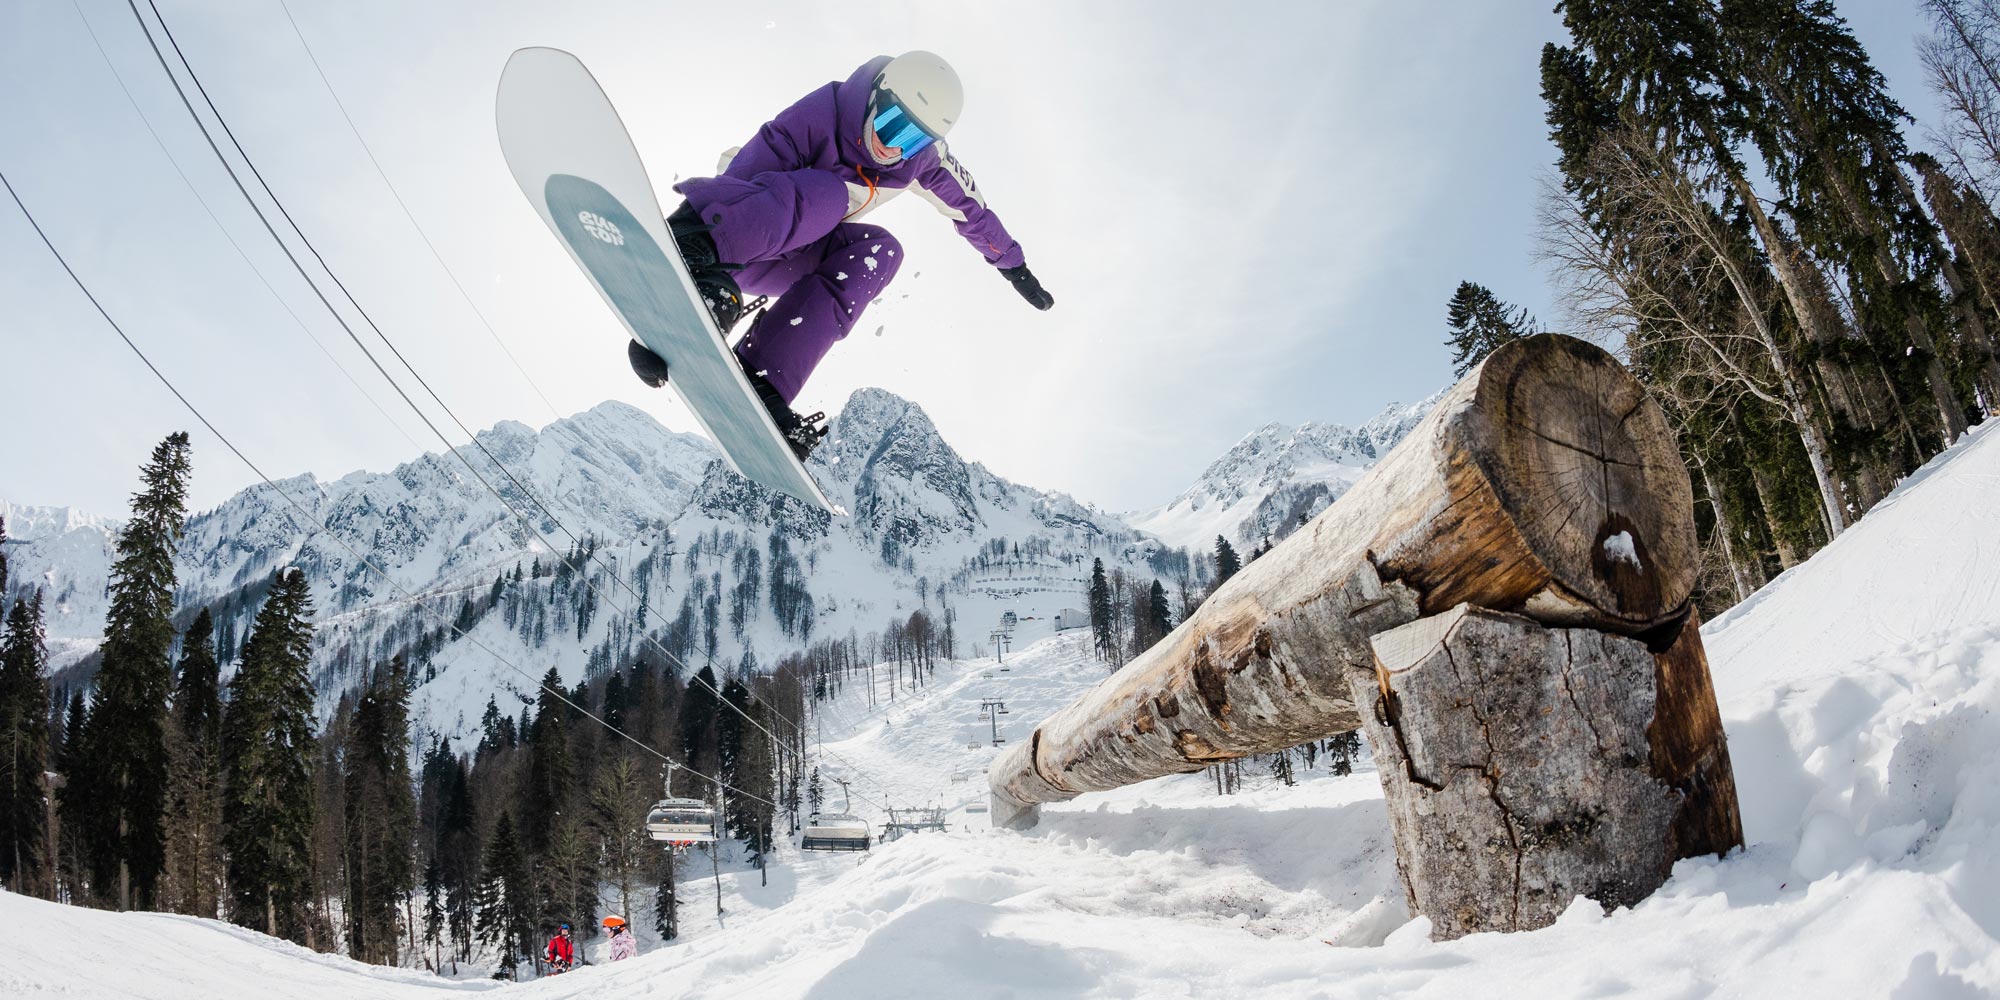 Трюки на сноуборде: от базовых до самых смелых